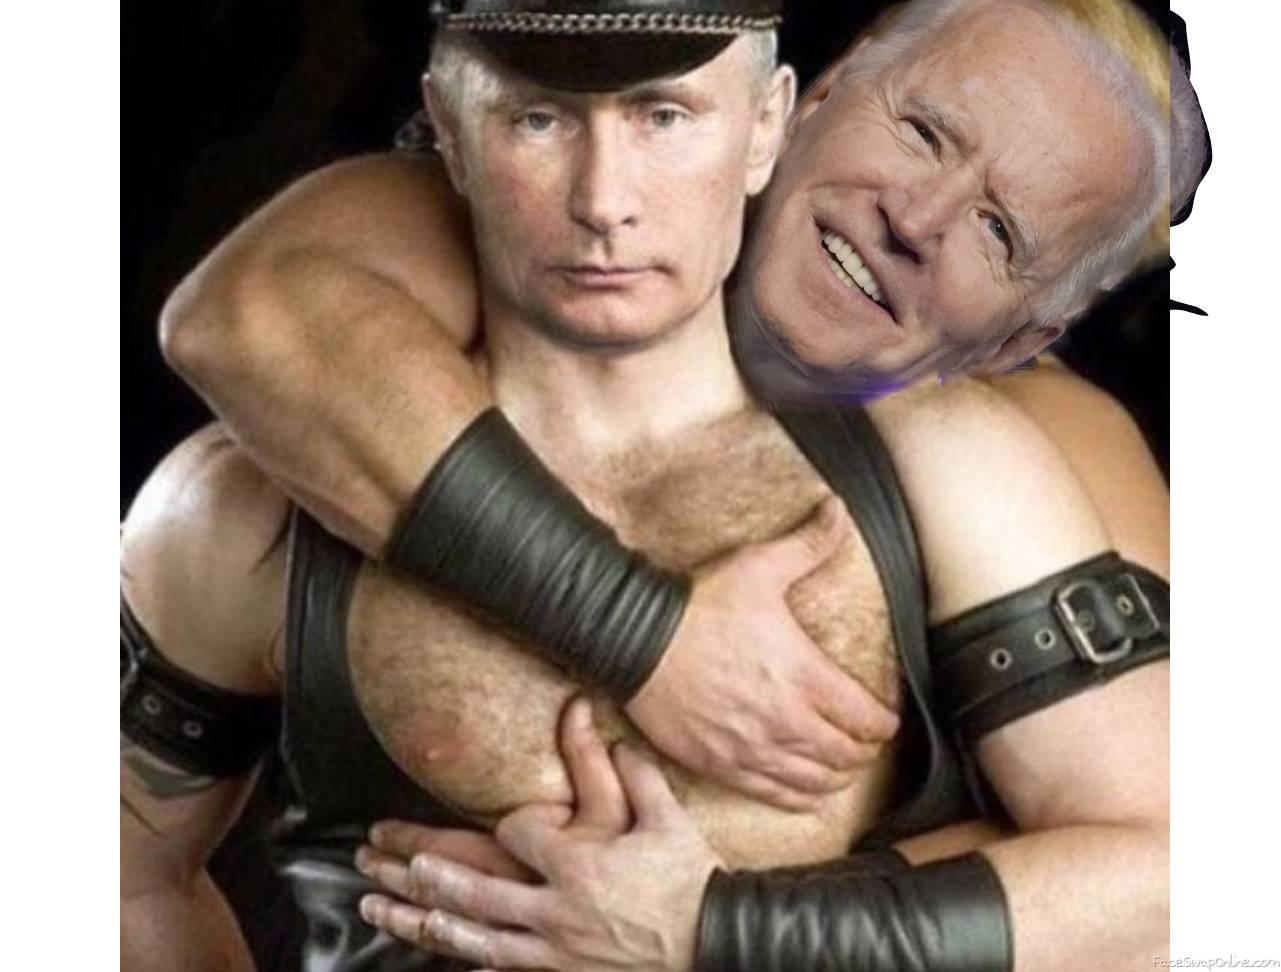 Biden & Putin